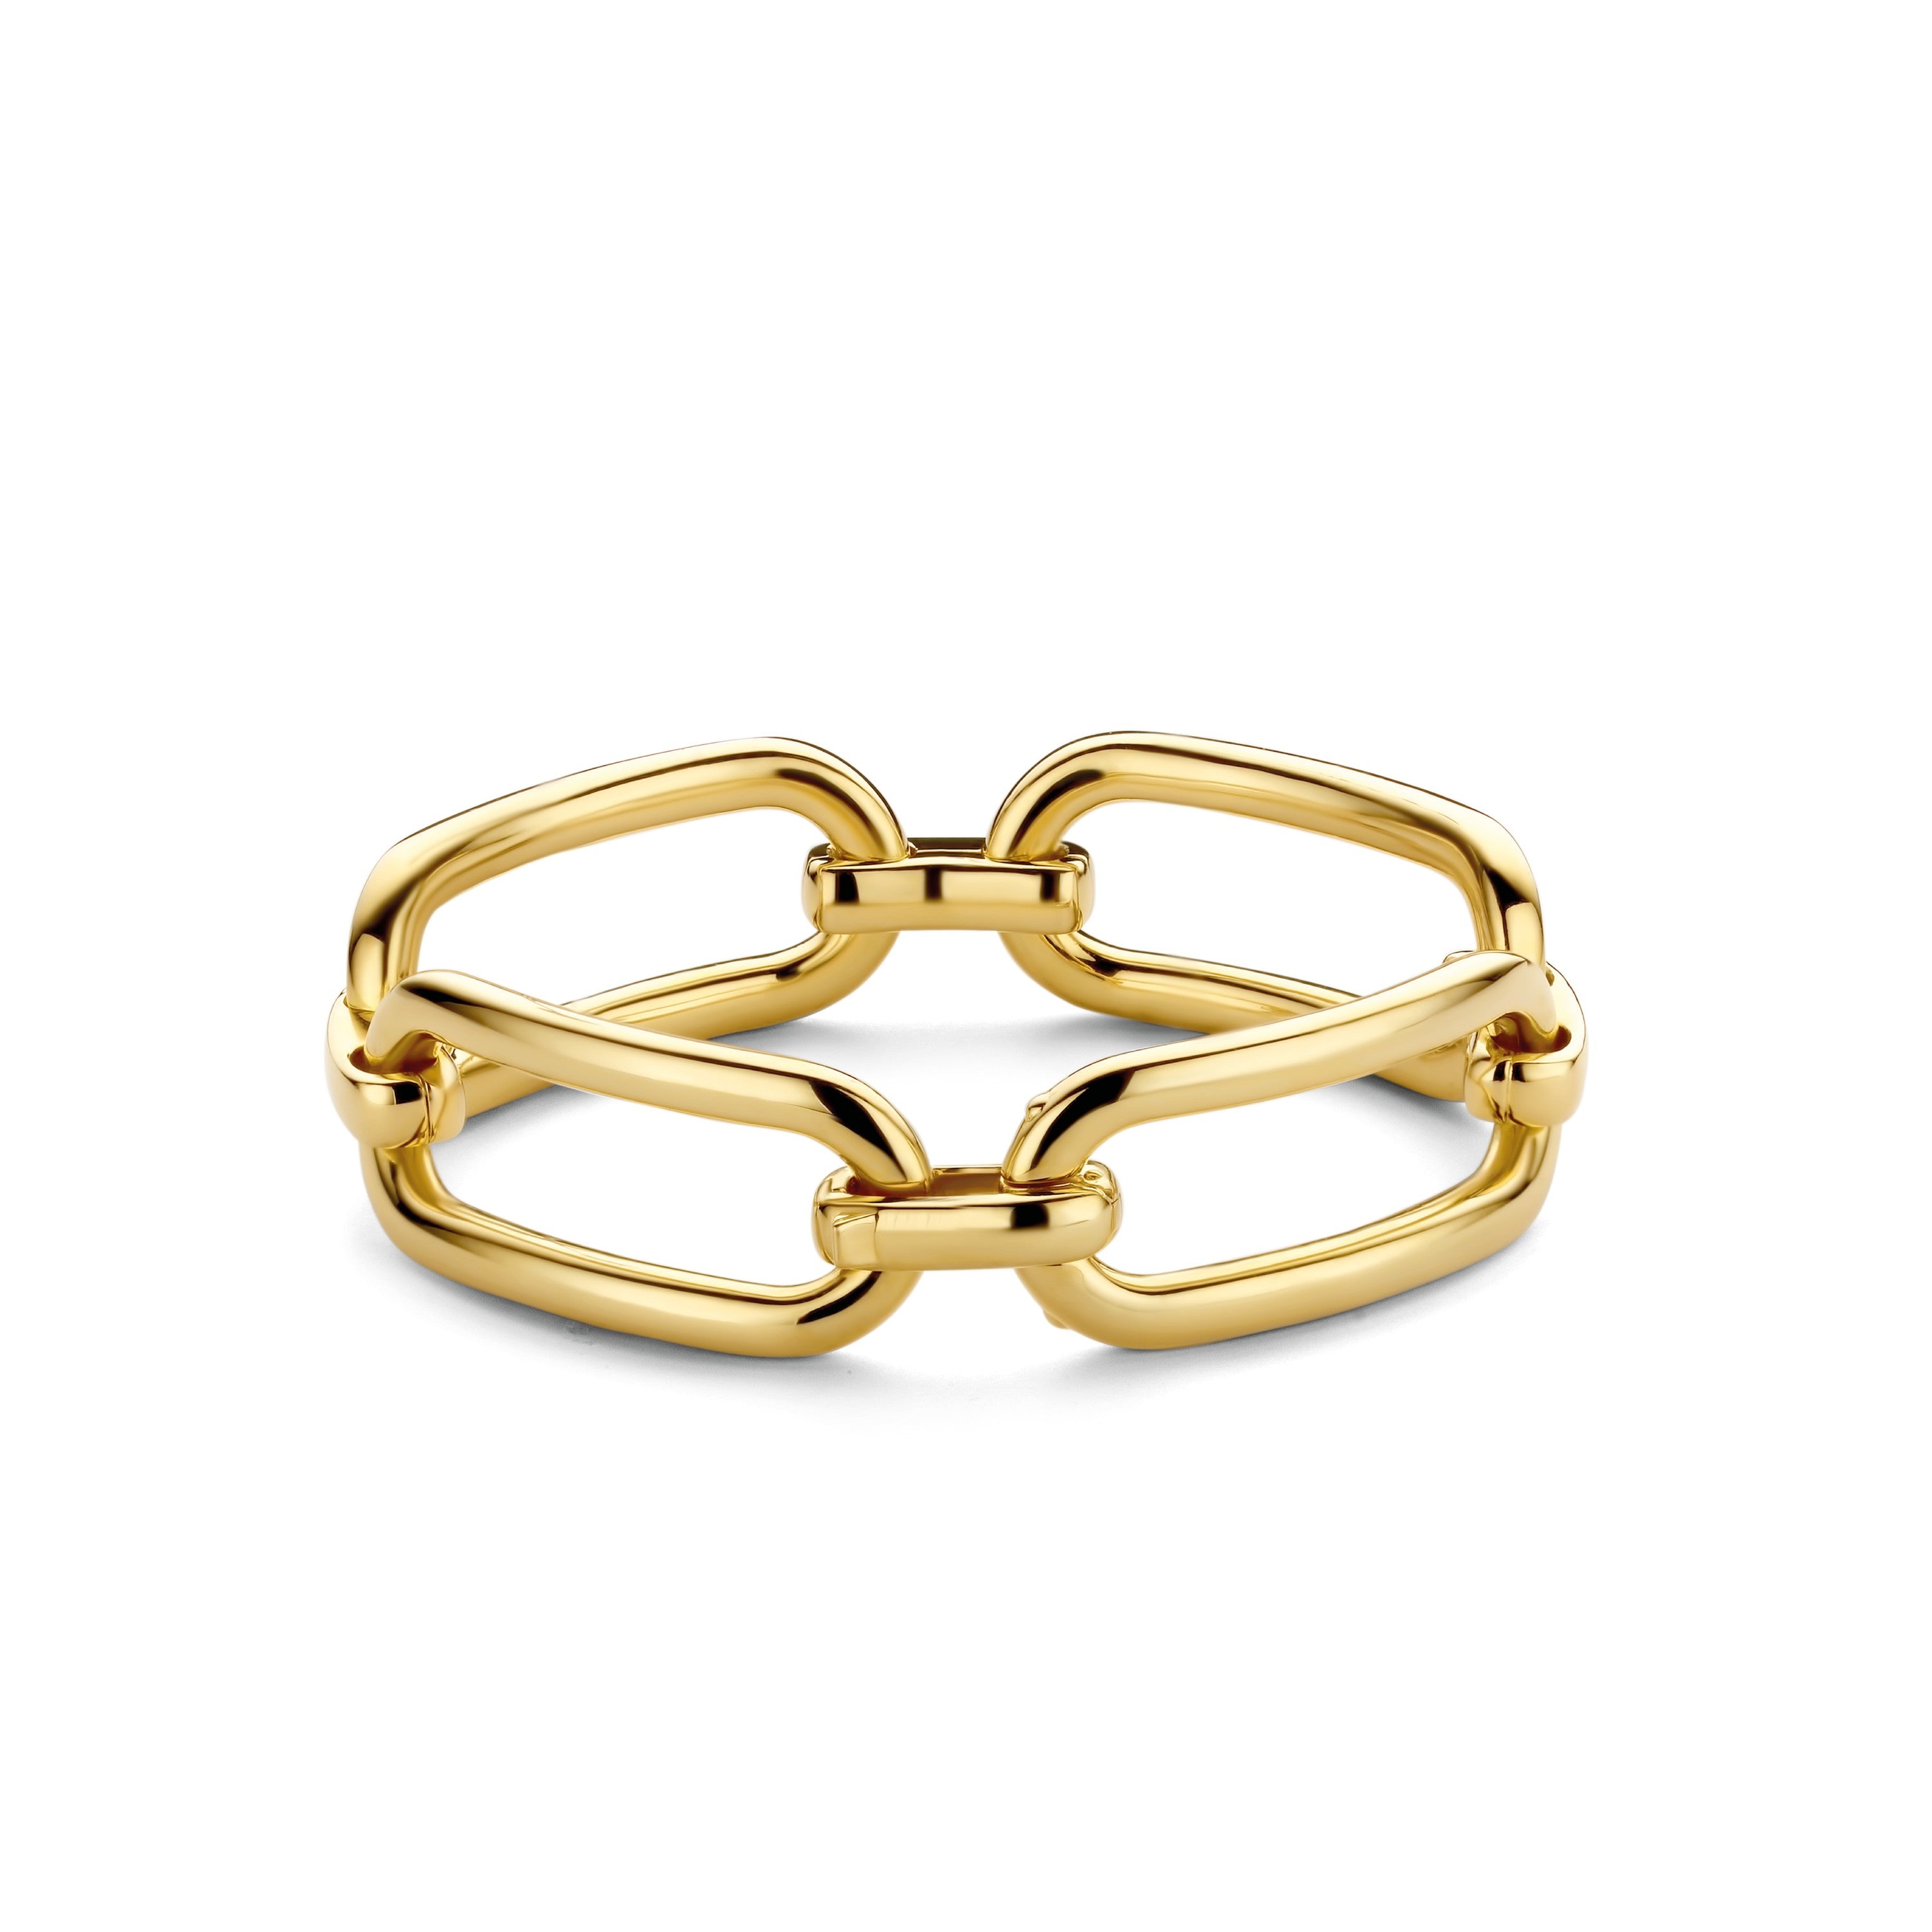 Classical Golden Link Bracelet